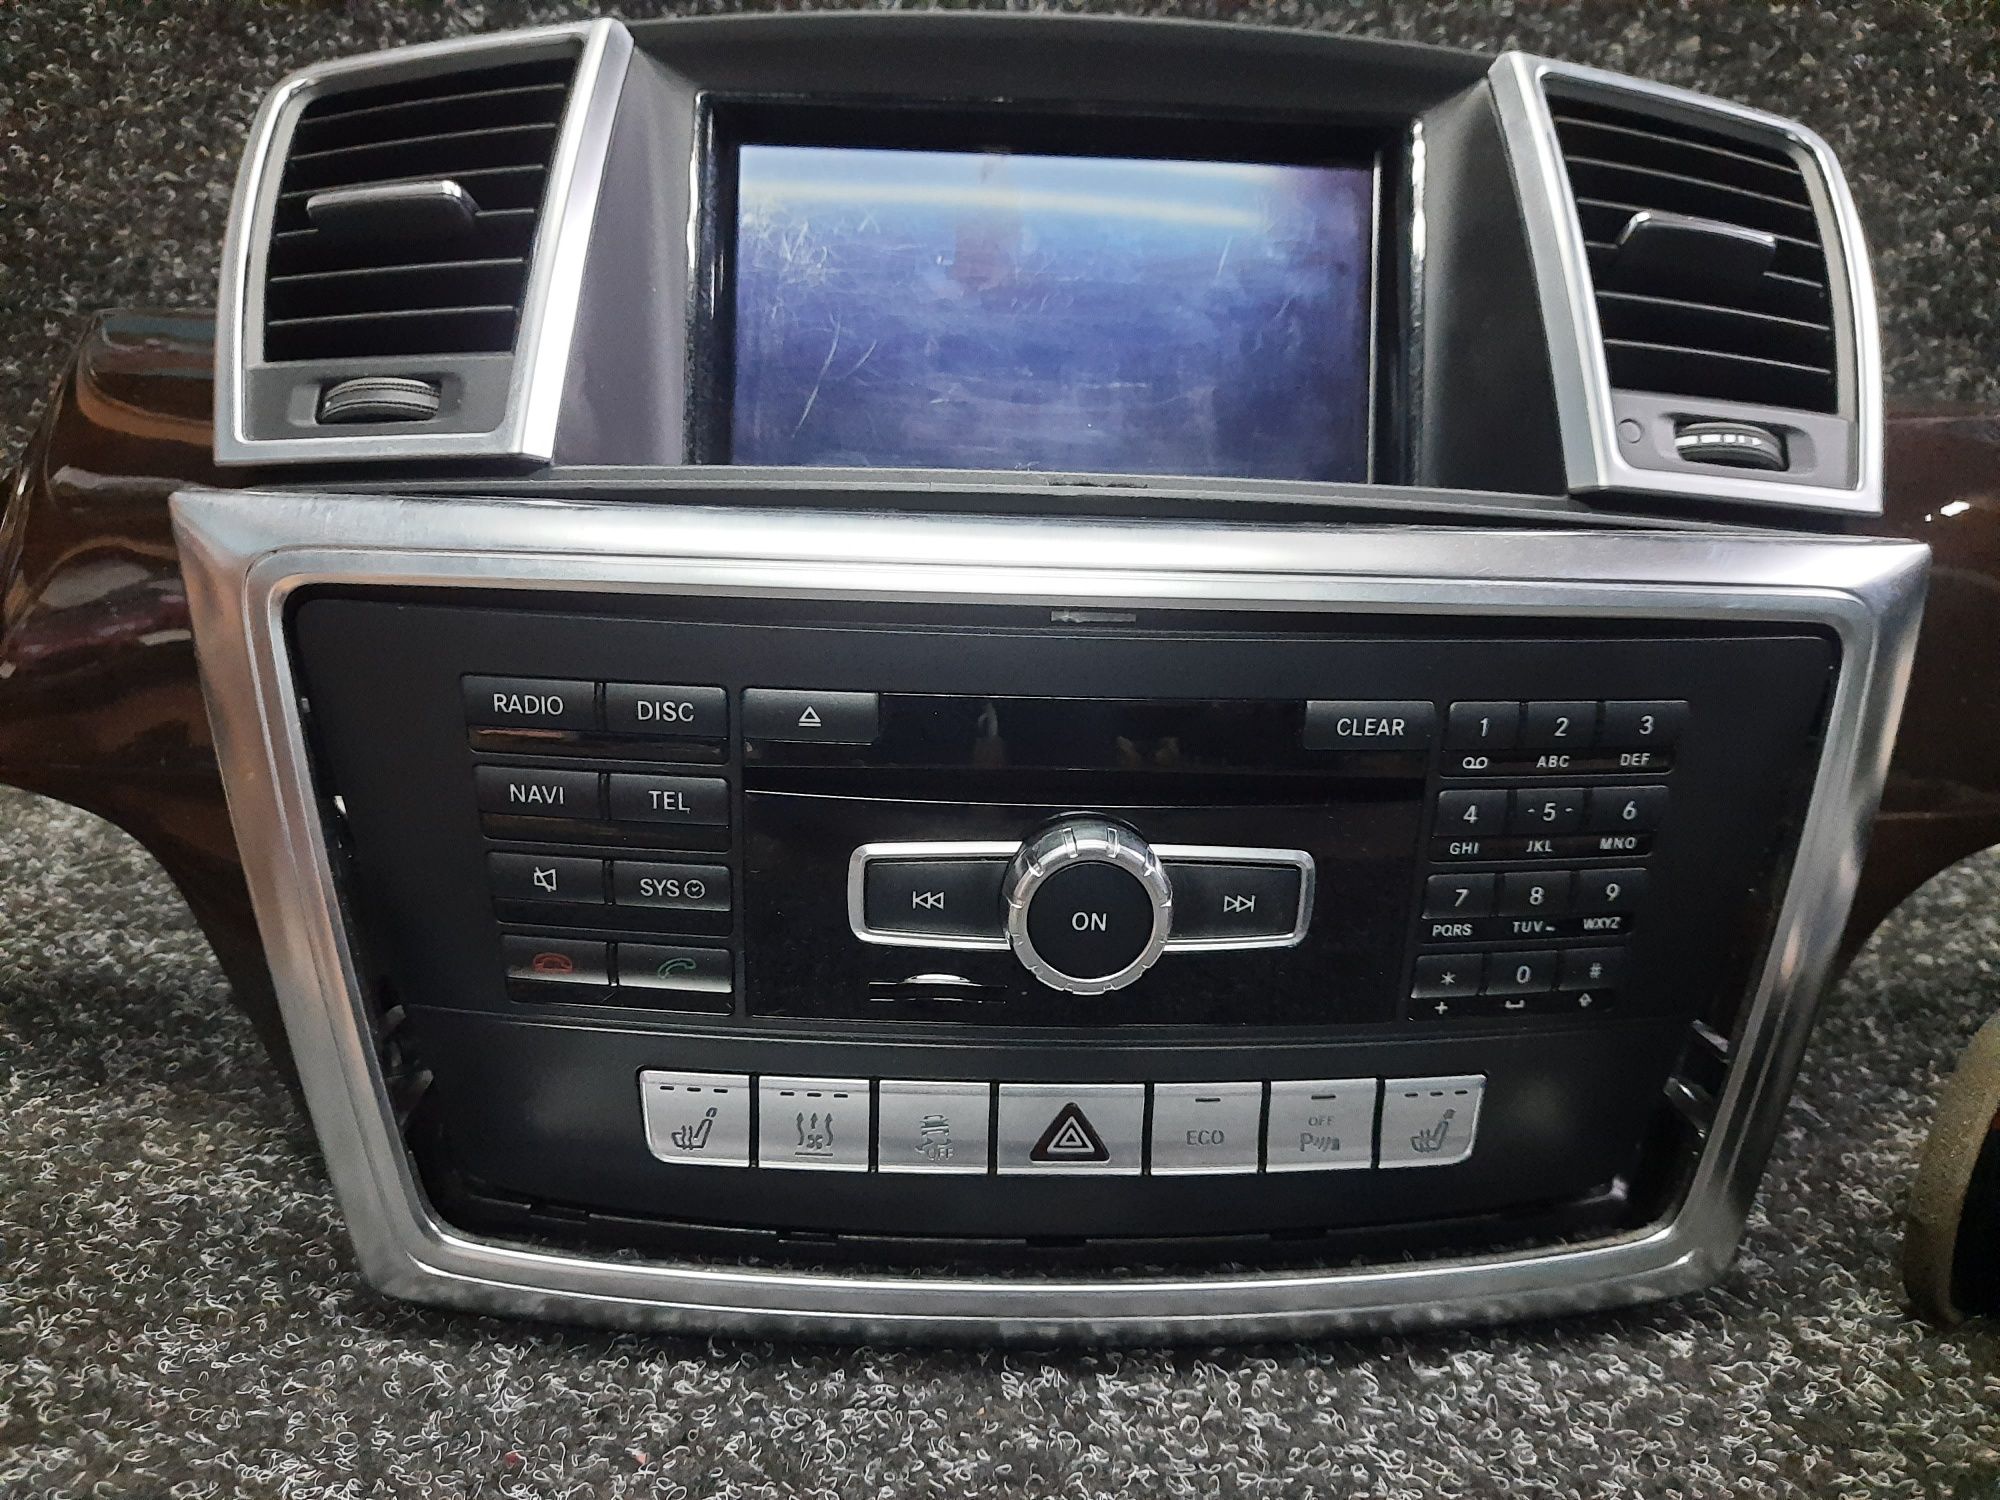 Mercedes W166 GL command display монитор экран магнитола климат